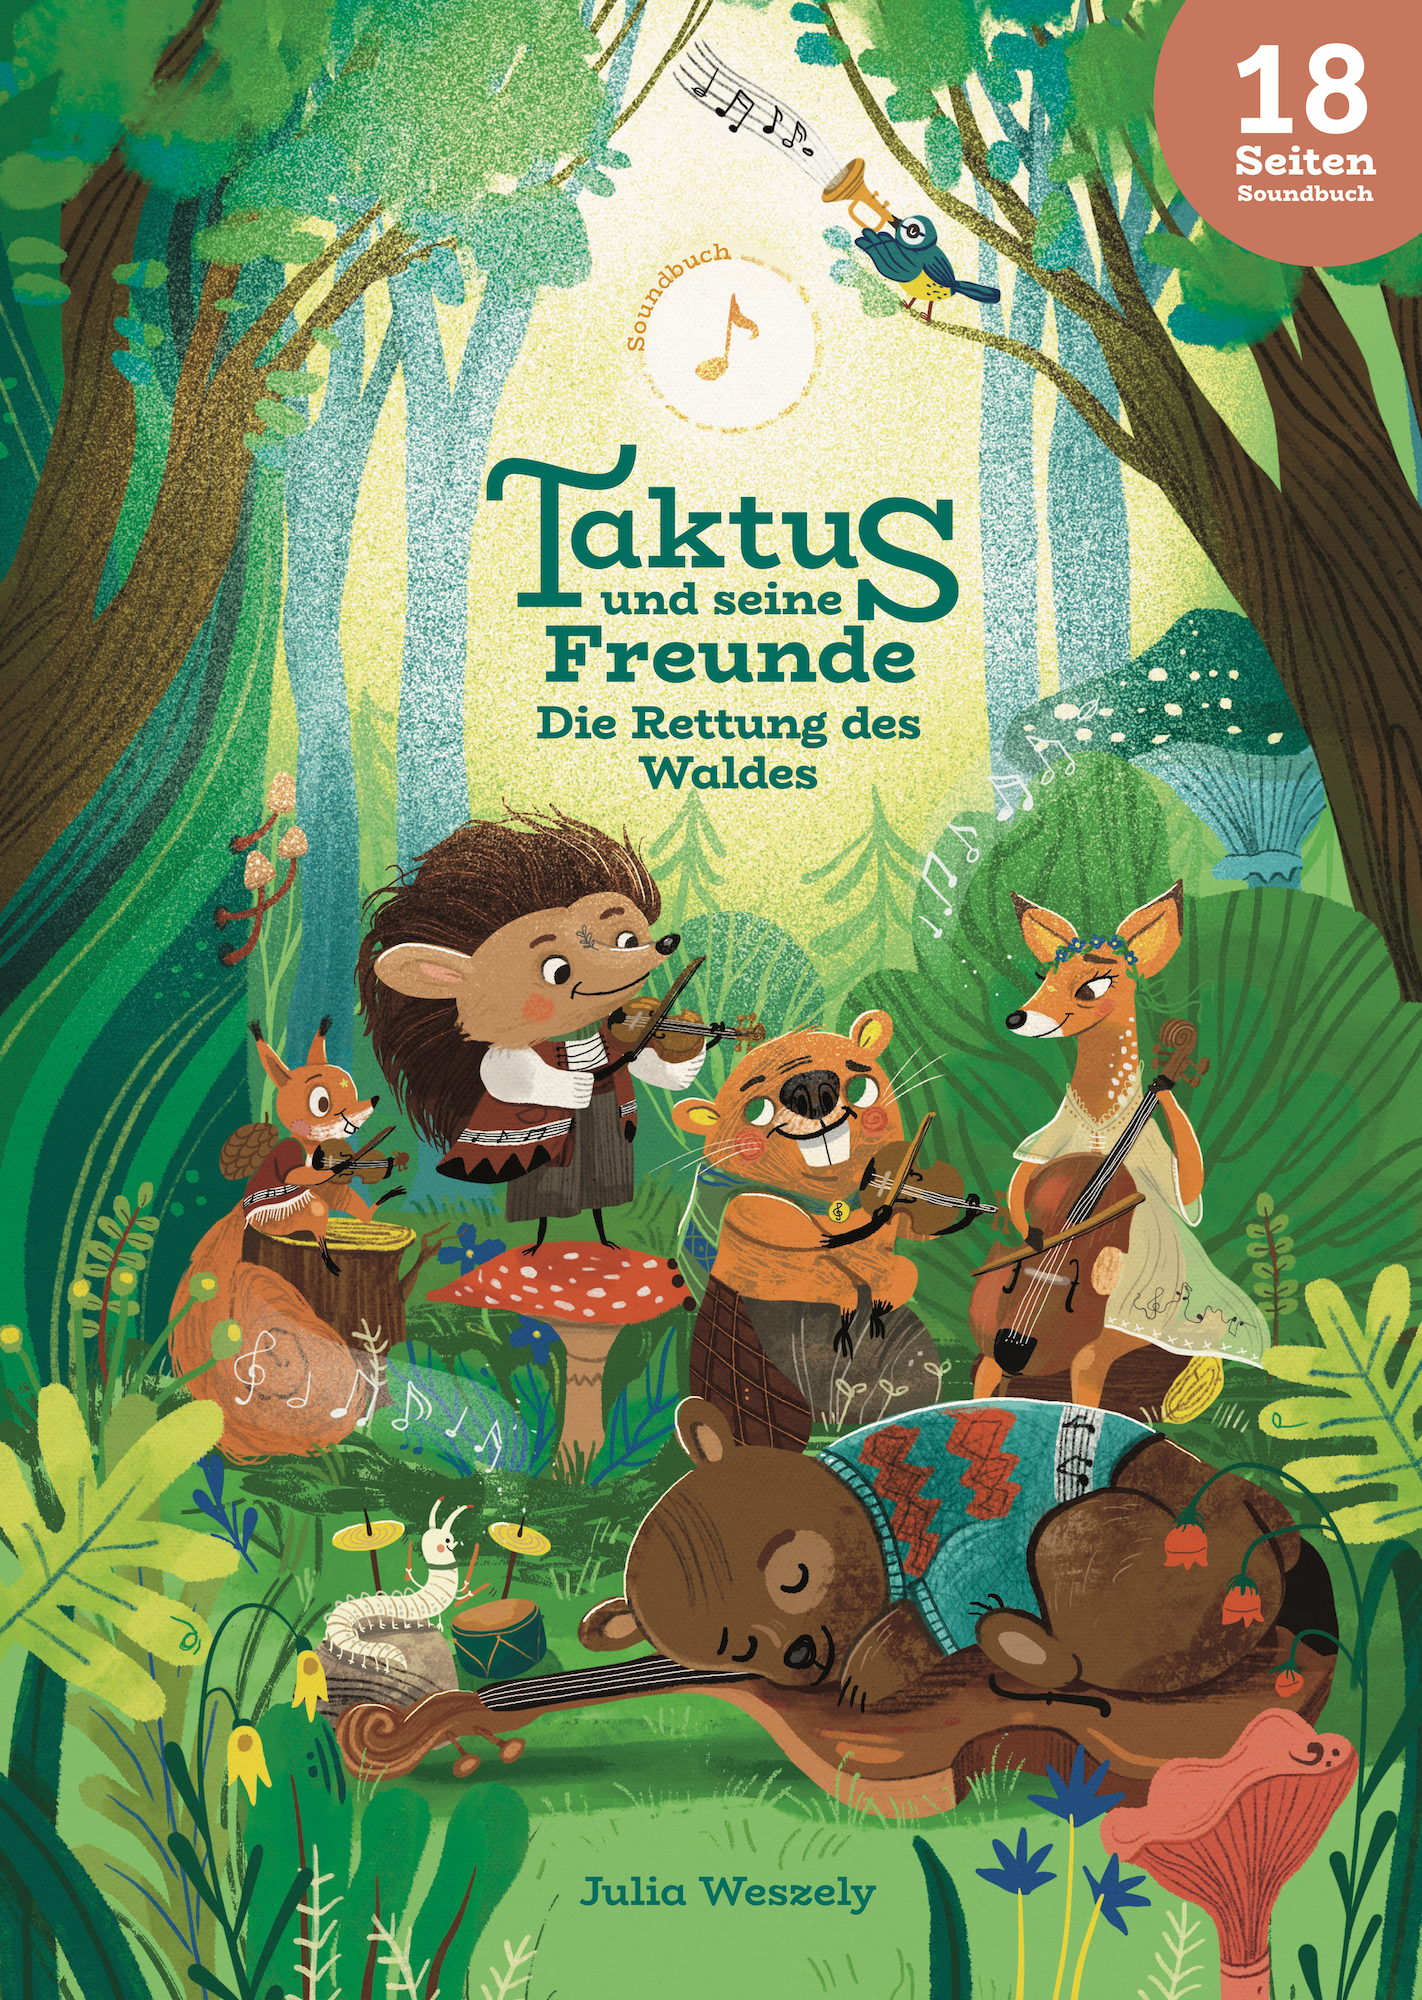 Soundbuch "Taktus und seine Freunde - die Rettung des Waldes" Cover Vorderseite